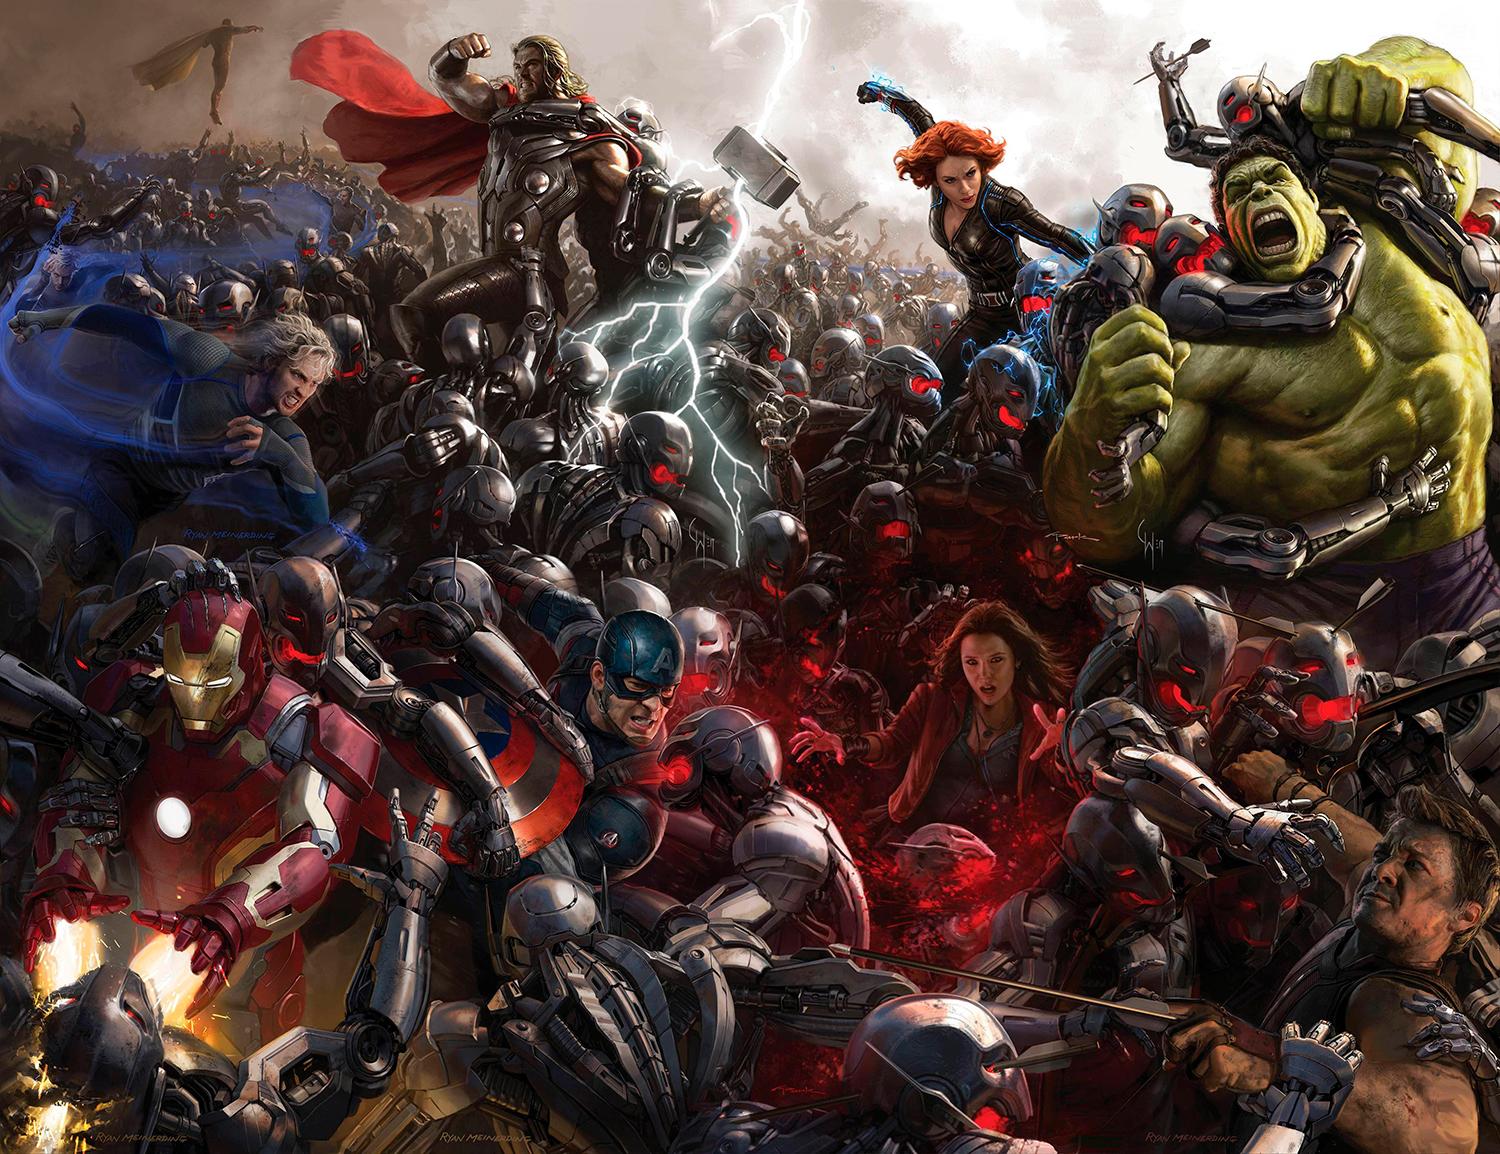 Marvelovskí hrdinovia na plagáte k filmu Avengers: Age of Ultron, 2015, ktorý nakrútil natočil režisér a scenárista Joss Whedon.